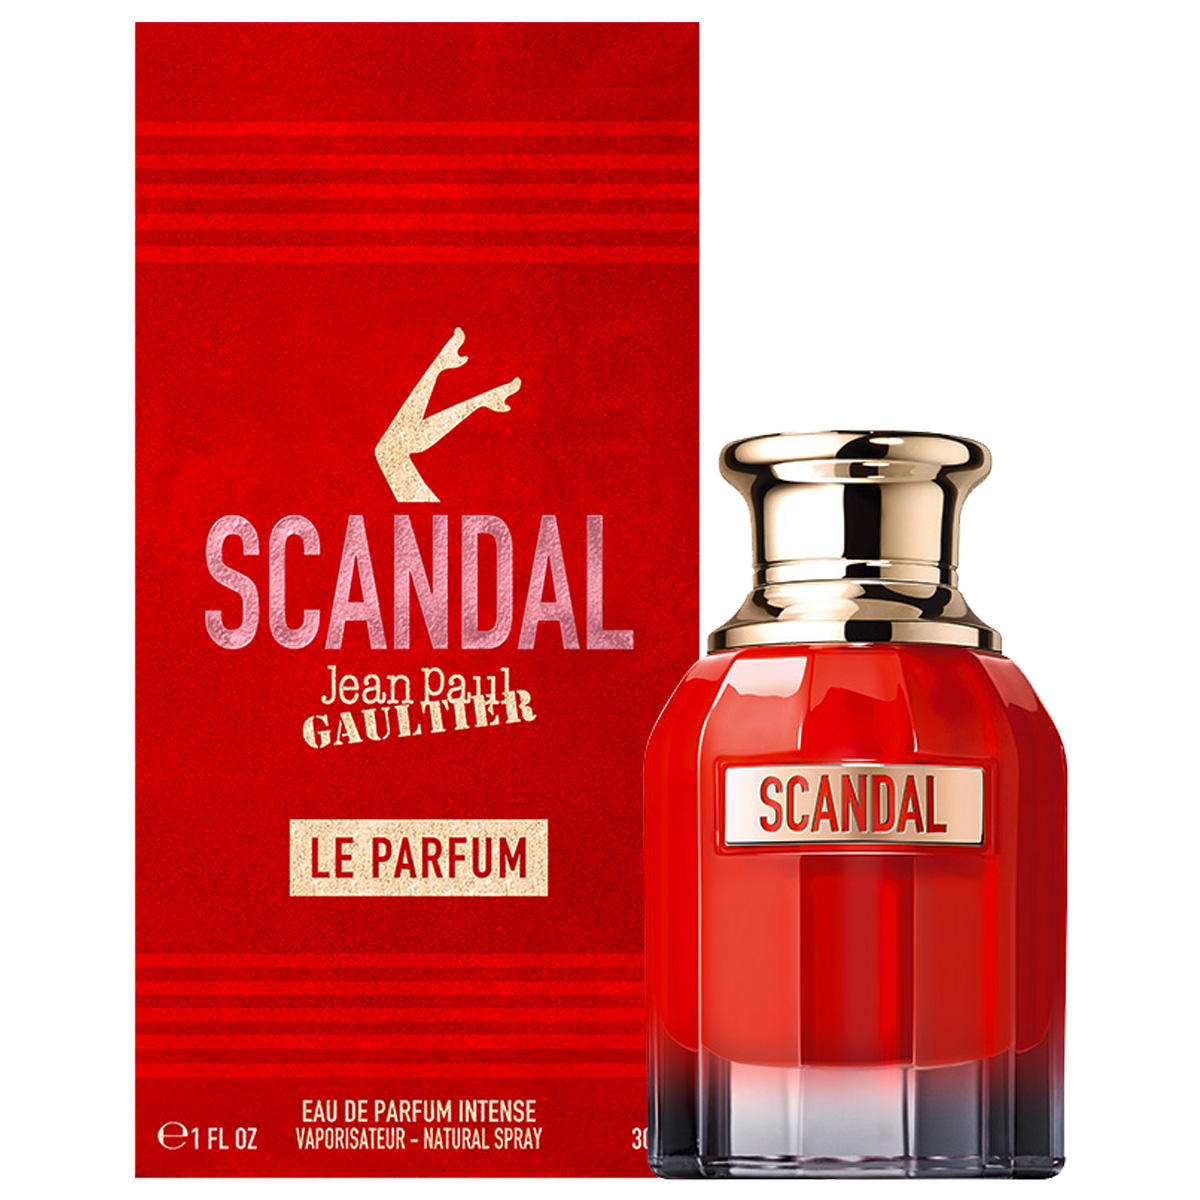 Jean Paul Gaultier Scandal Le Parfum Eau de Parfum Intense 30 ml - 3